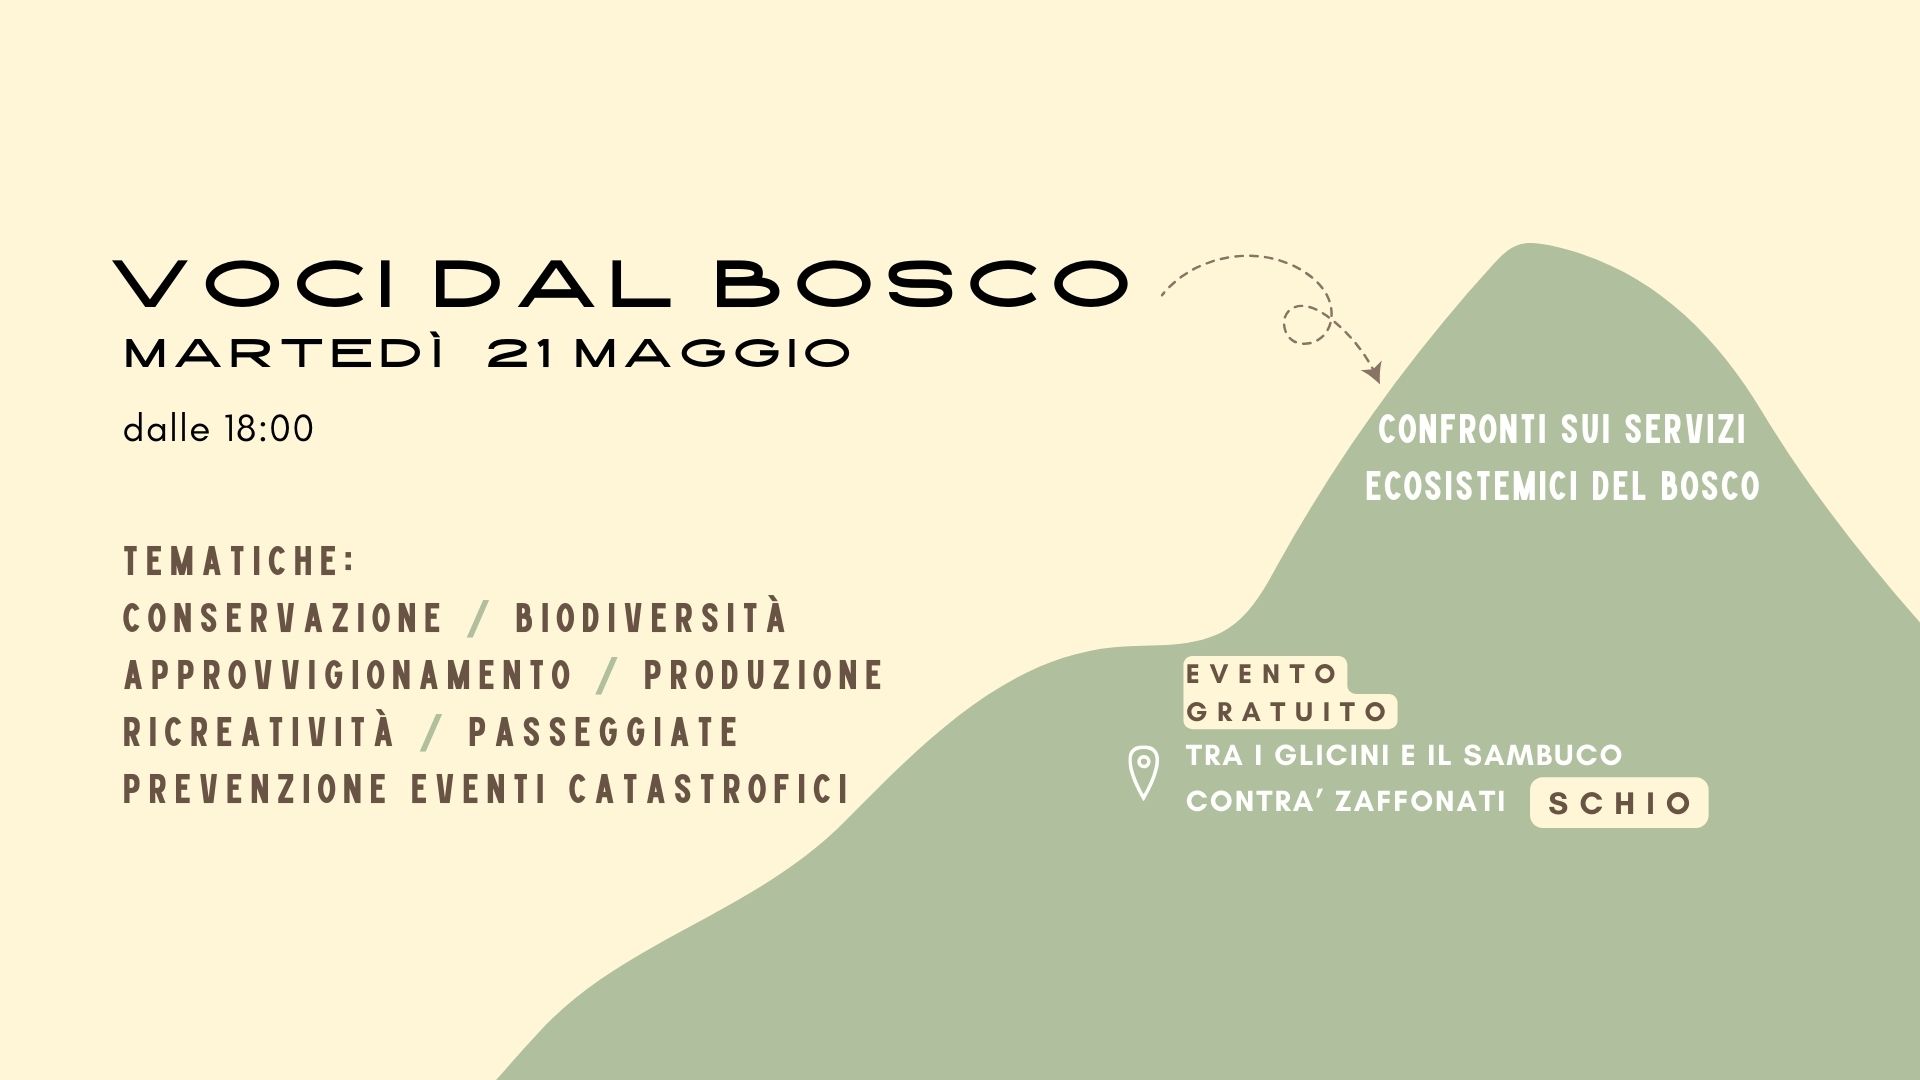 Featured image for “VOCI DAL BOSCO – Confronti sui servizi ecosistemici del bosco”